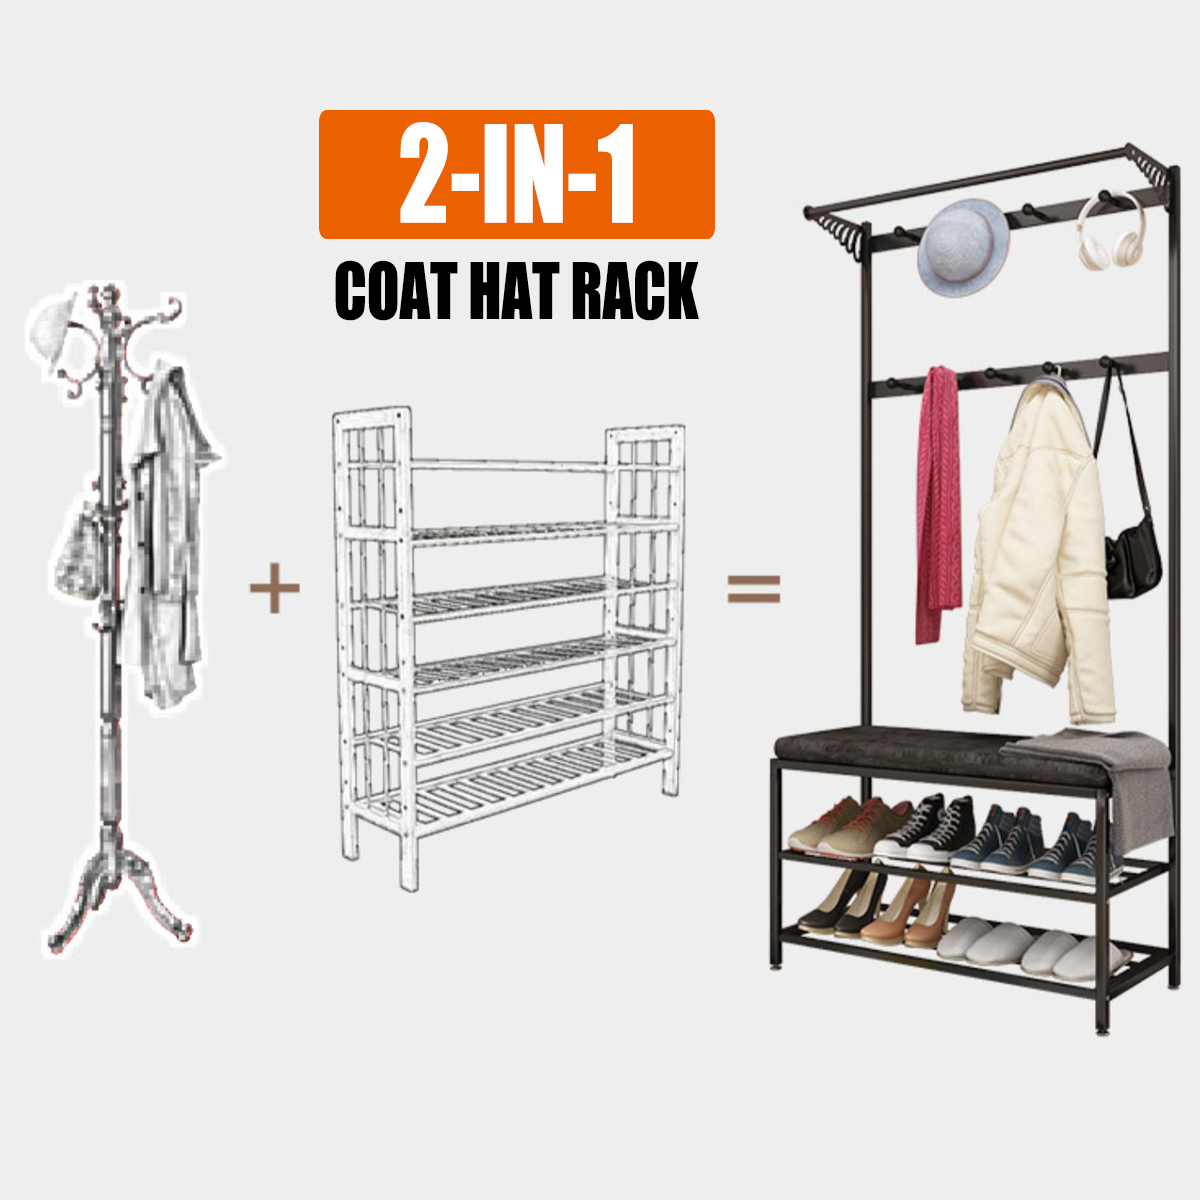 80cm-Coat-Rack-Shoe-Rack-Multifunctional-Storage-Bench-Door-Hat-Clothes-Umbrella-Hangers-Storage-She-1787854-2